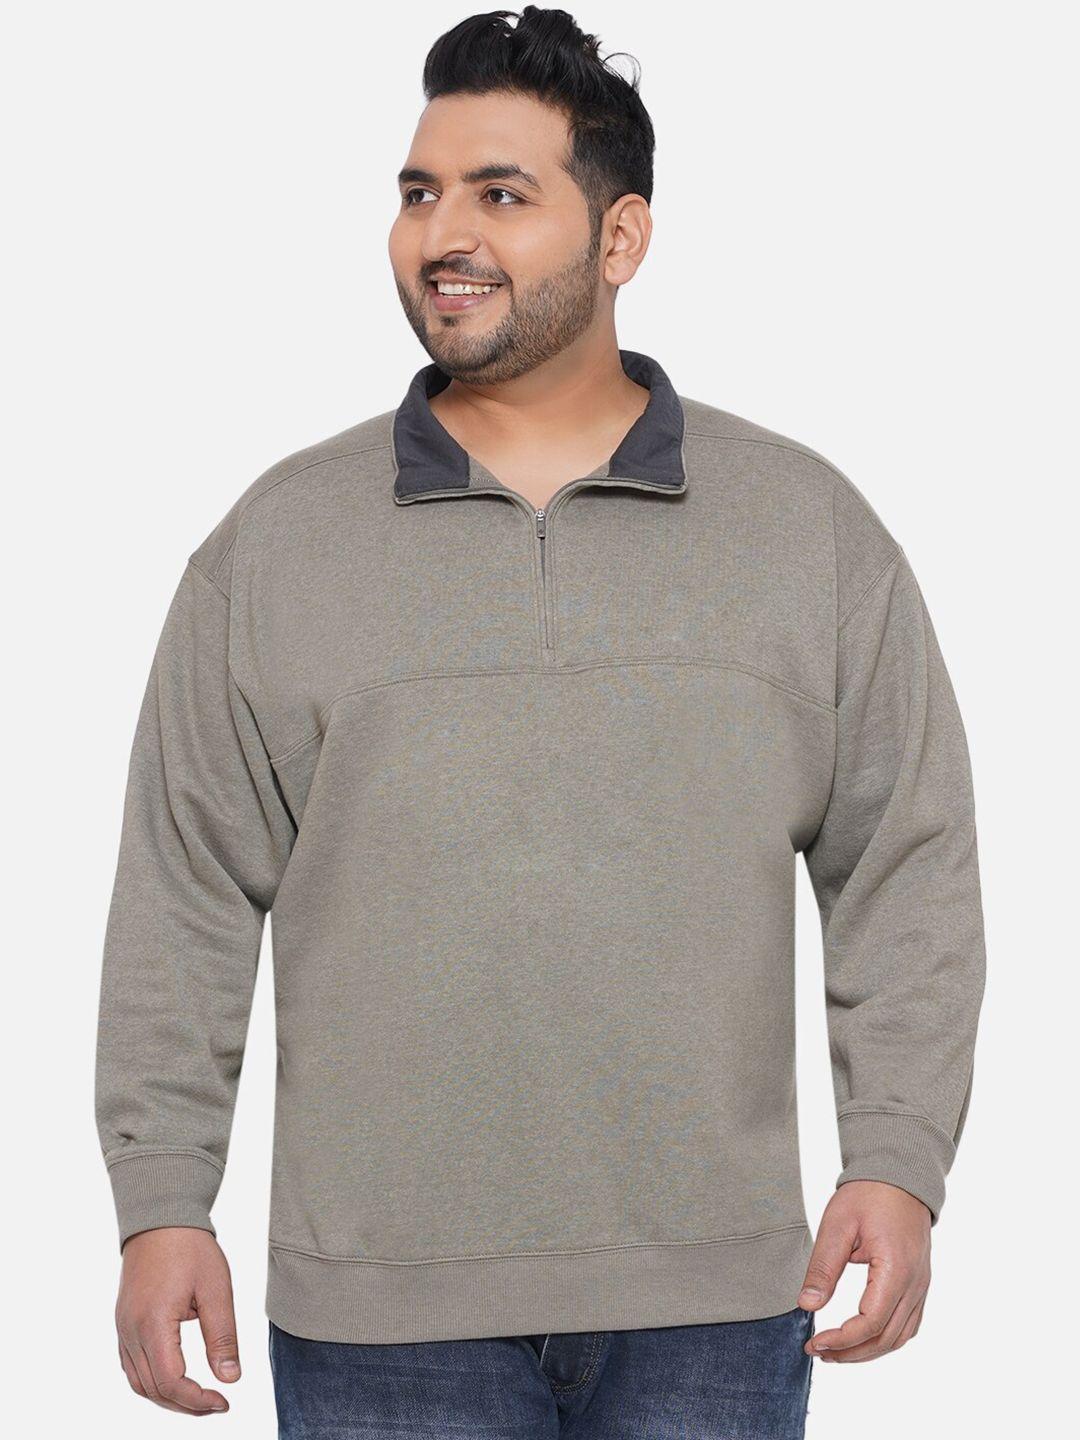 santonio-plus-size-mock-collar-pure-cotton-sweatshirt